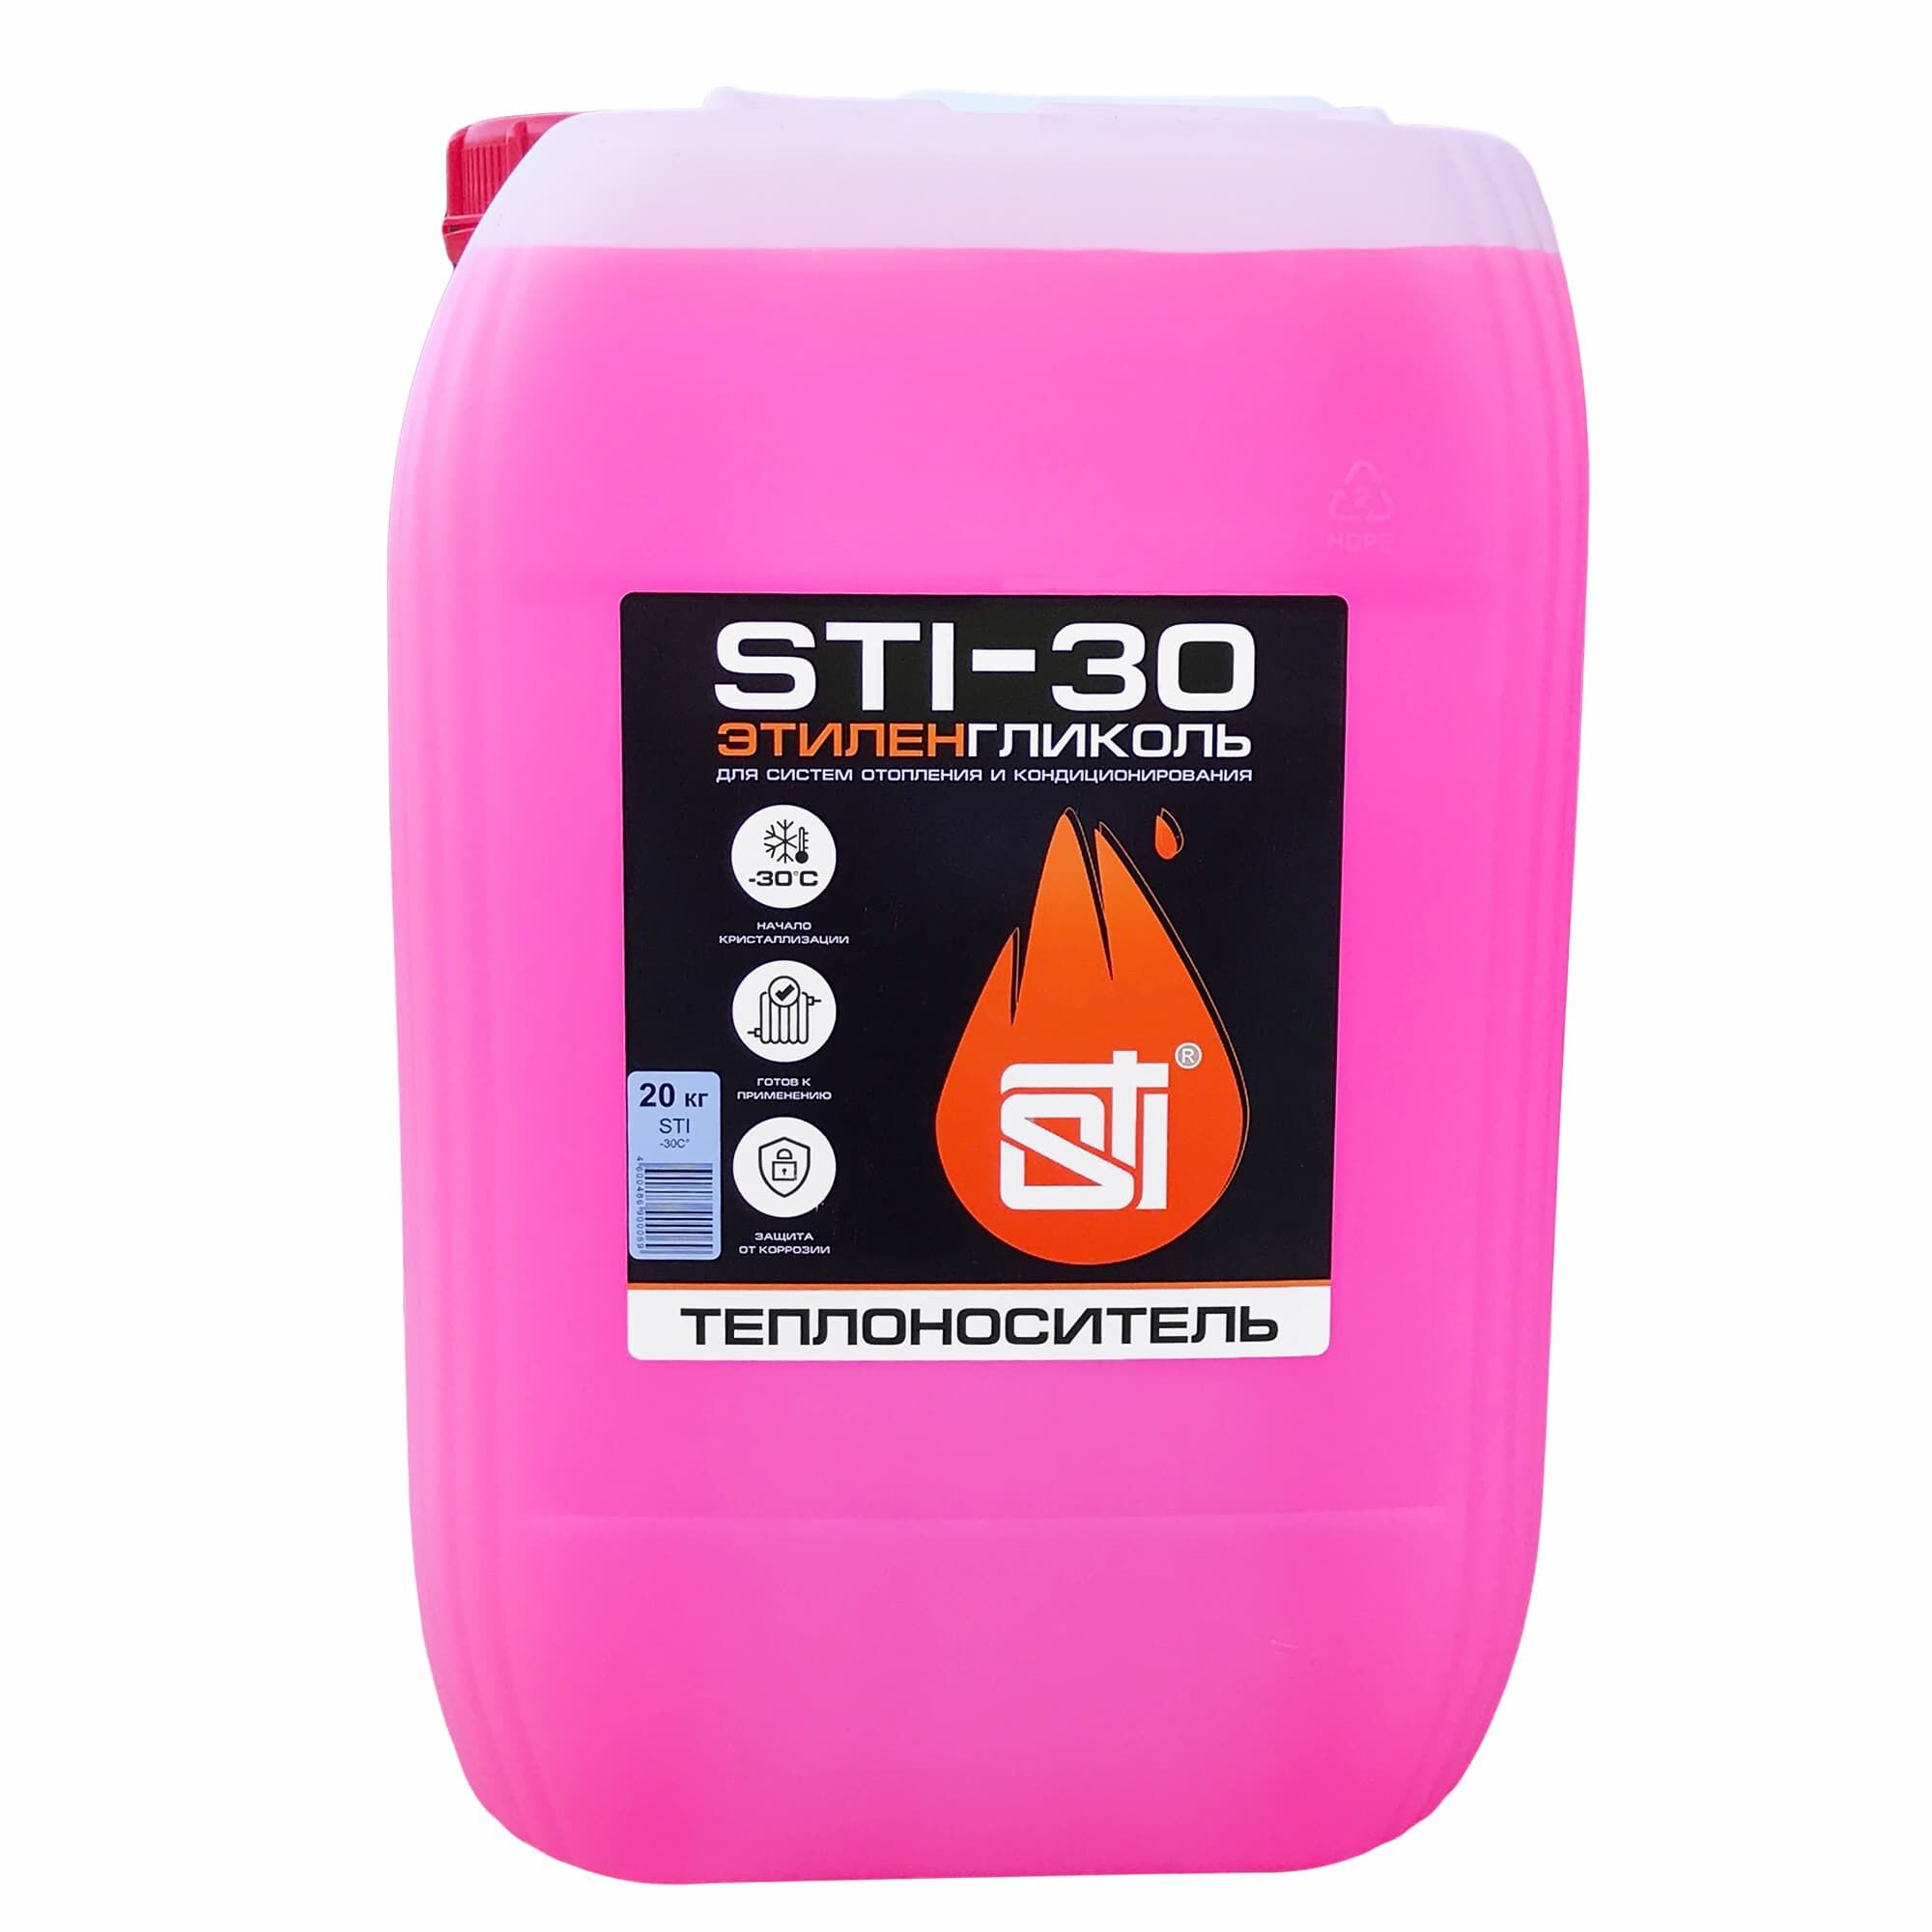 Теплоноситель (антифриз) STI этиленгликоль (-30°C) 20 кг. 1